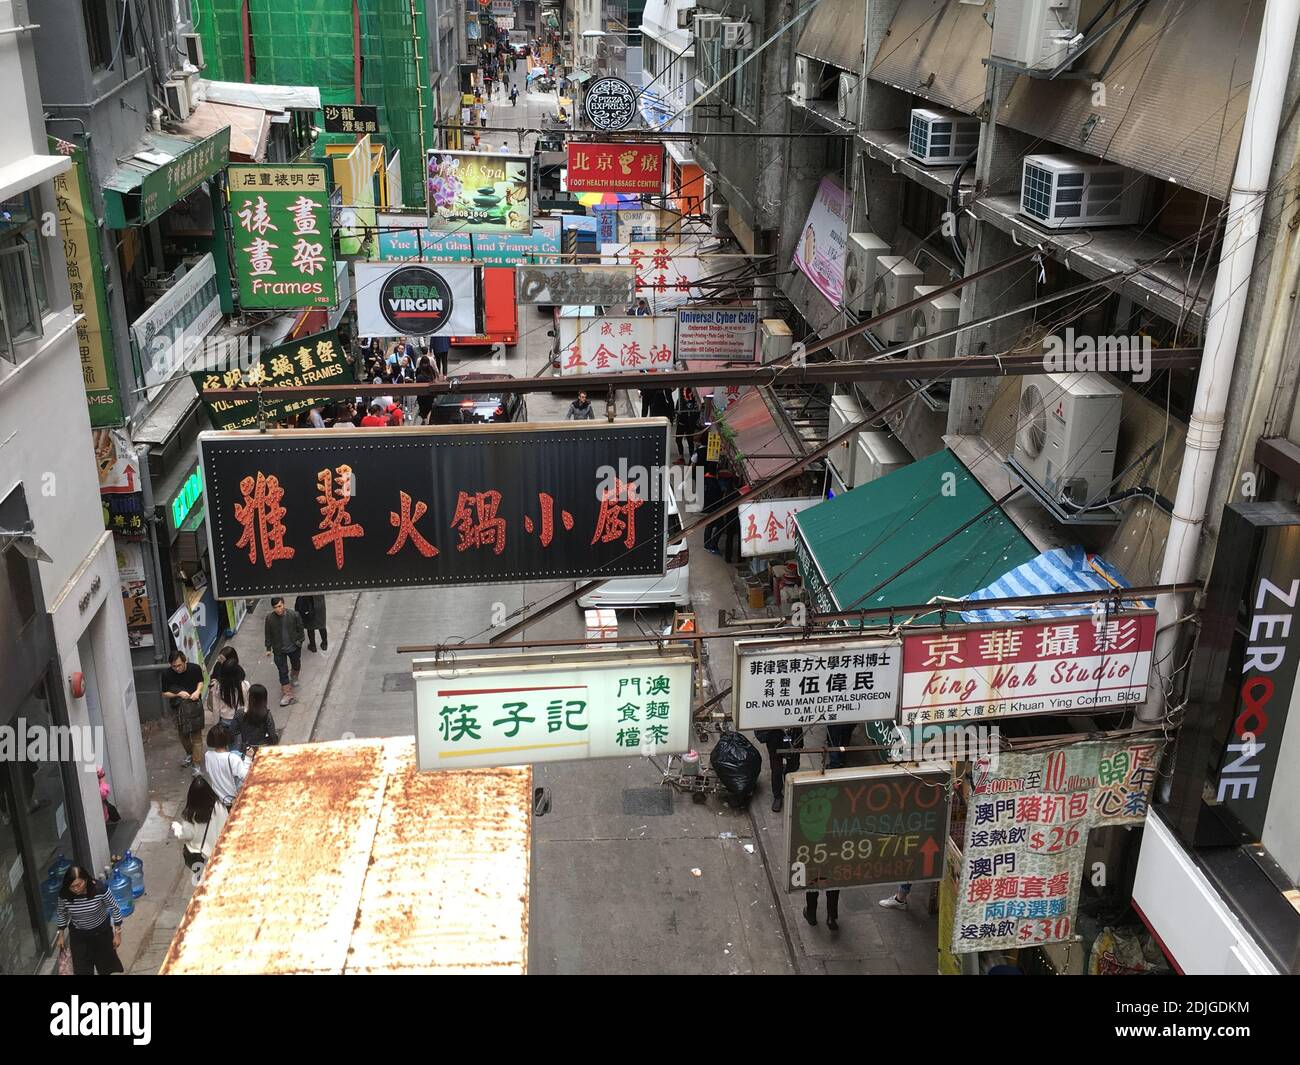 Una scena di strada a Hong Kong, vista dalla scala mobile di livello intermedio. Ernie Mastroianni foto Foto Stock